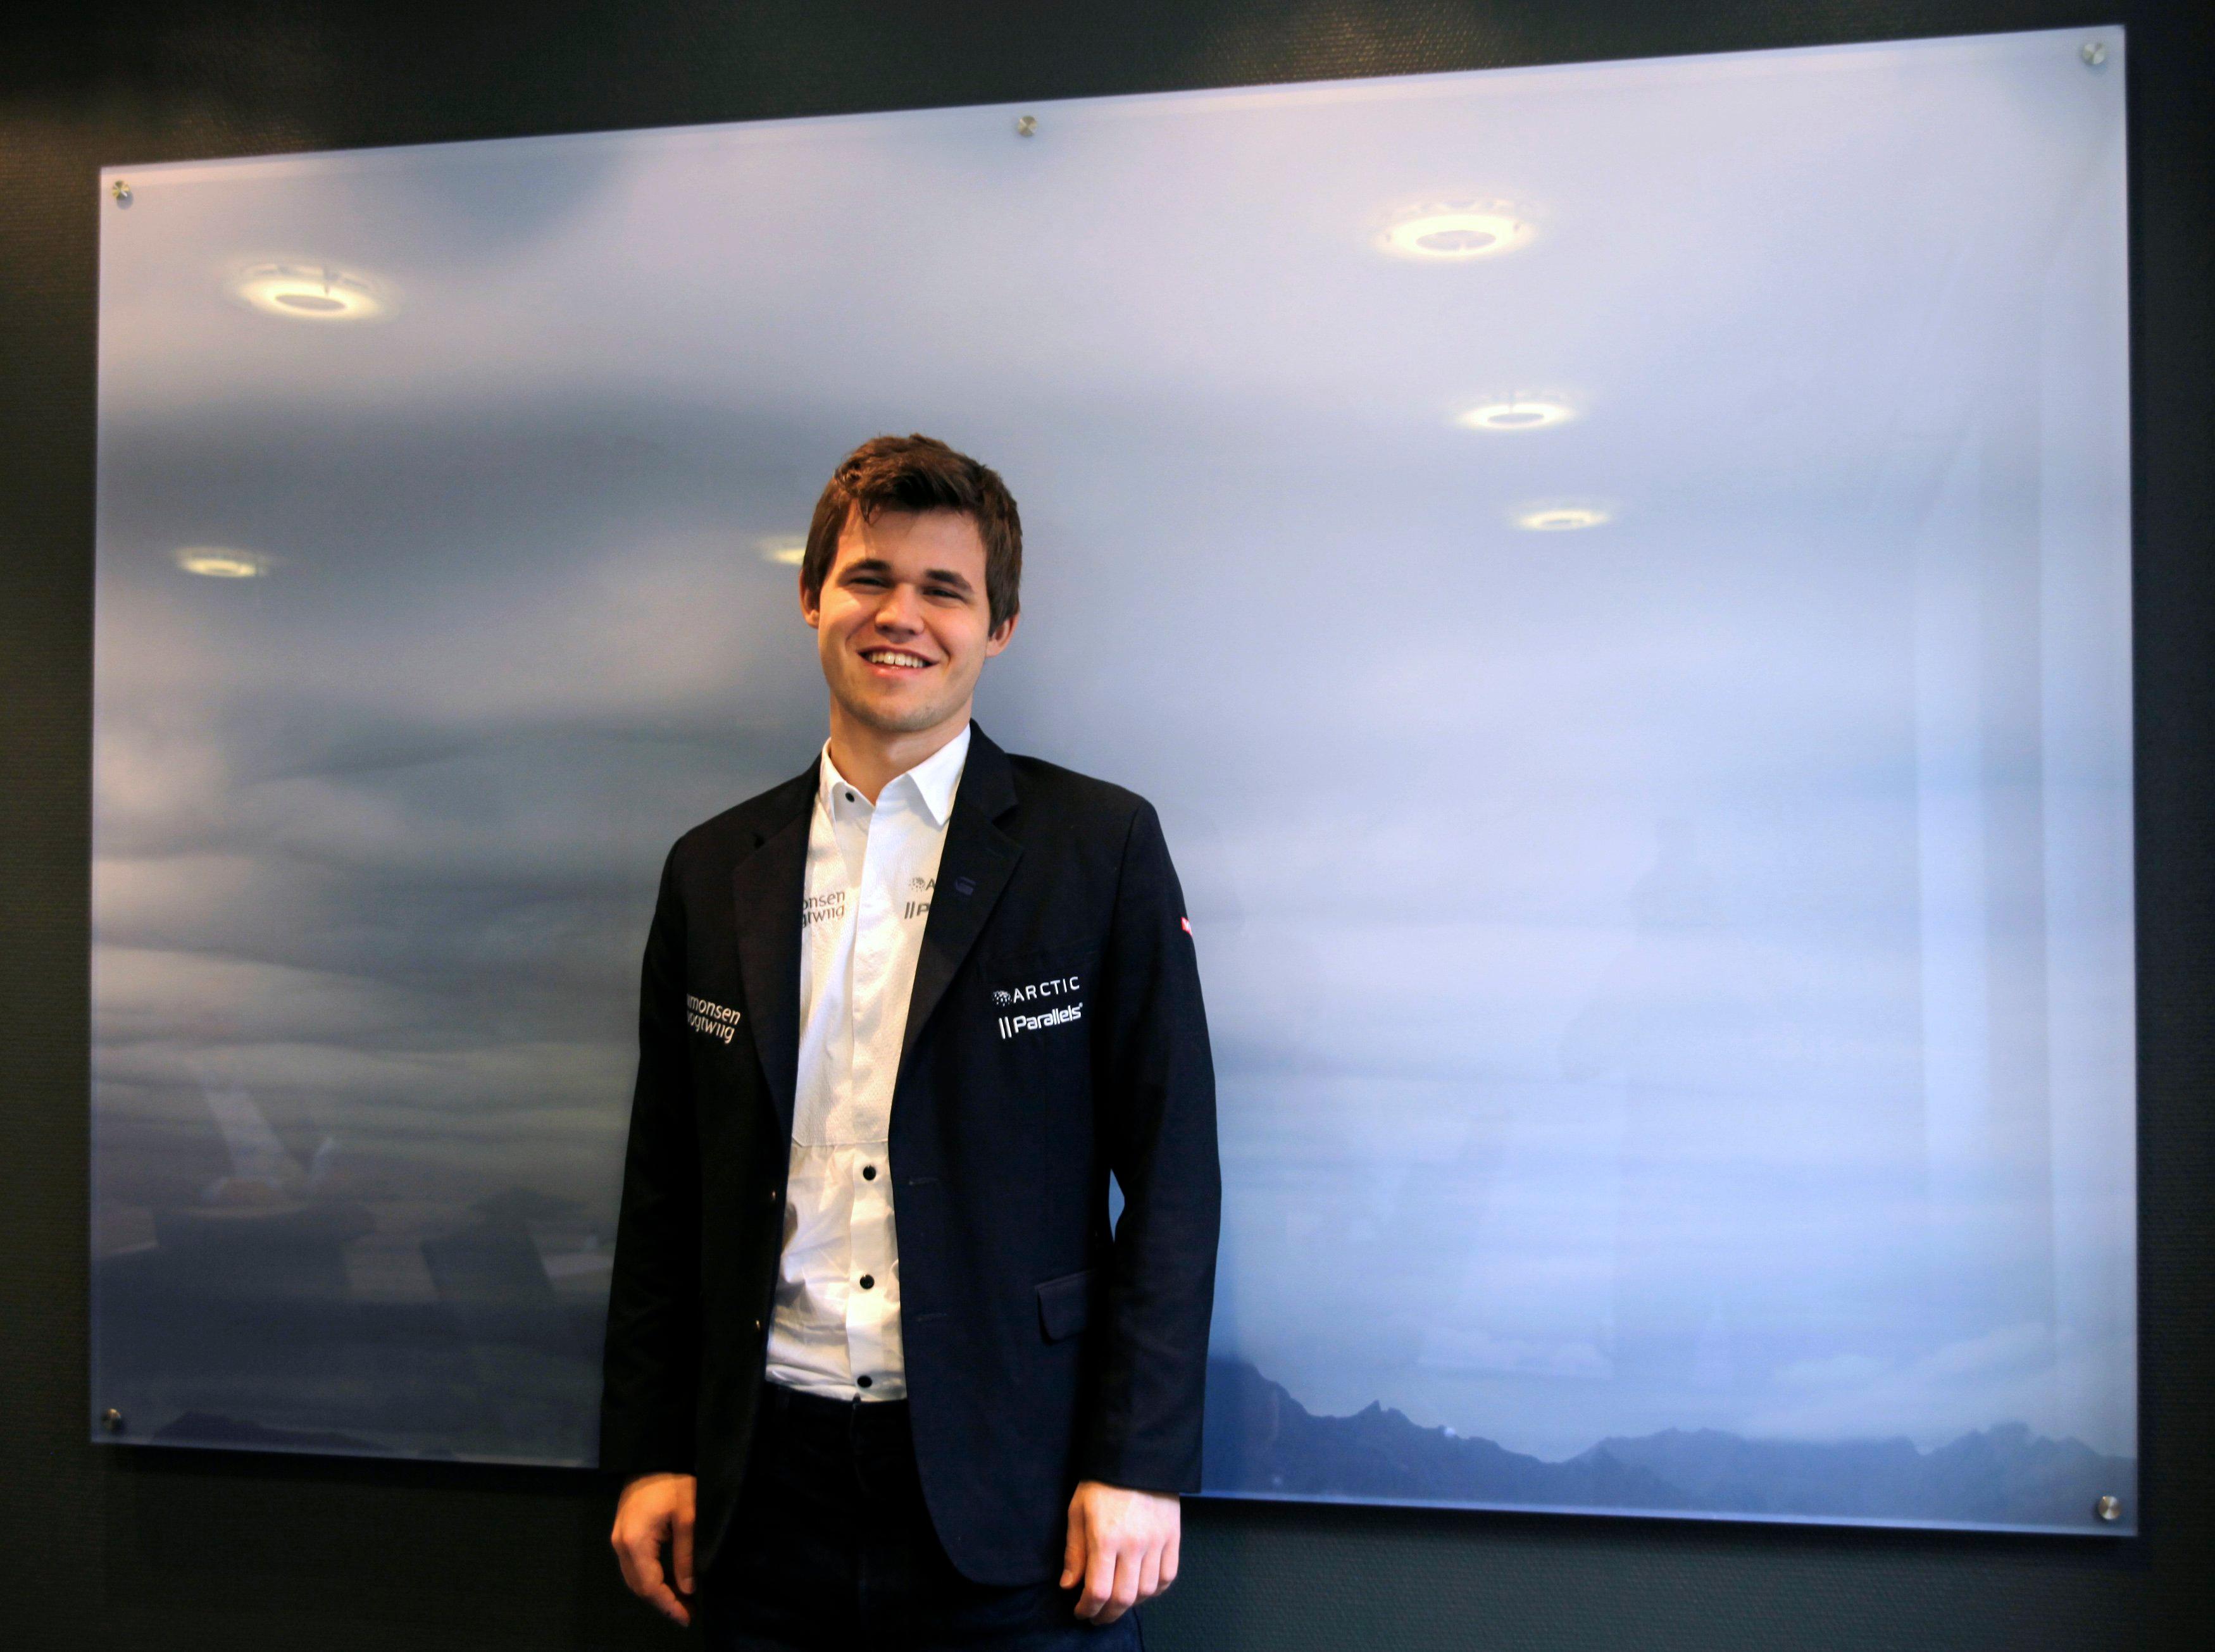 Magnus Carlsen - Tudo Sobre - Estadão